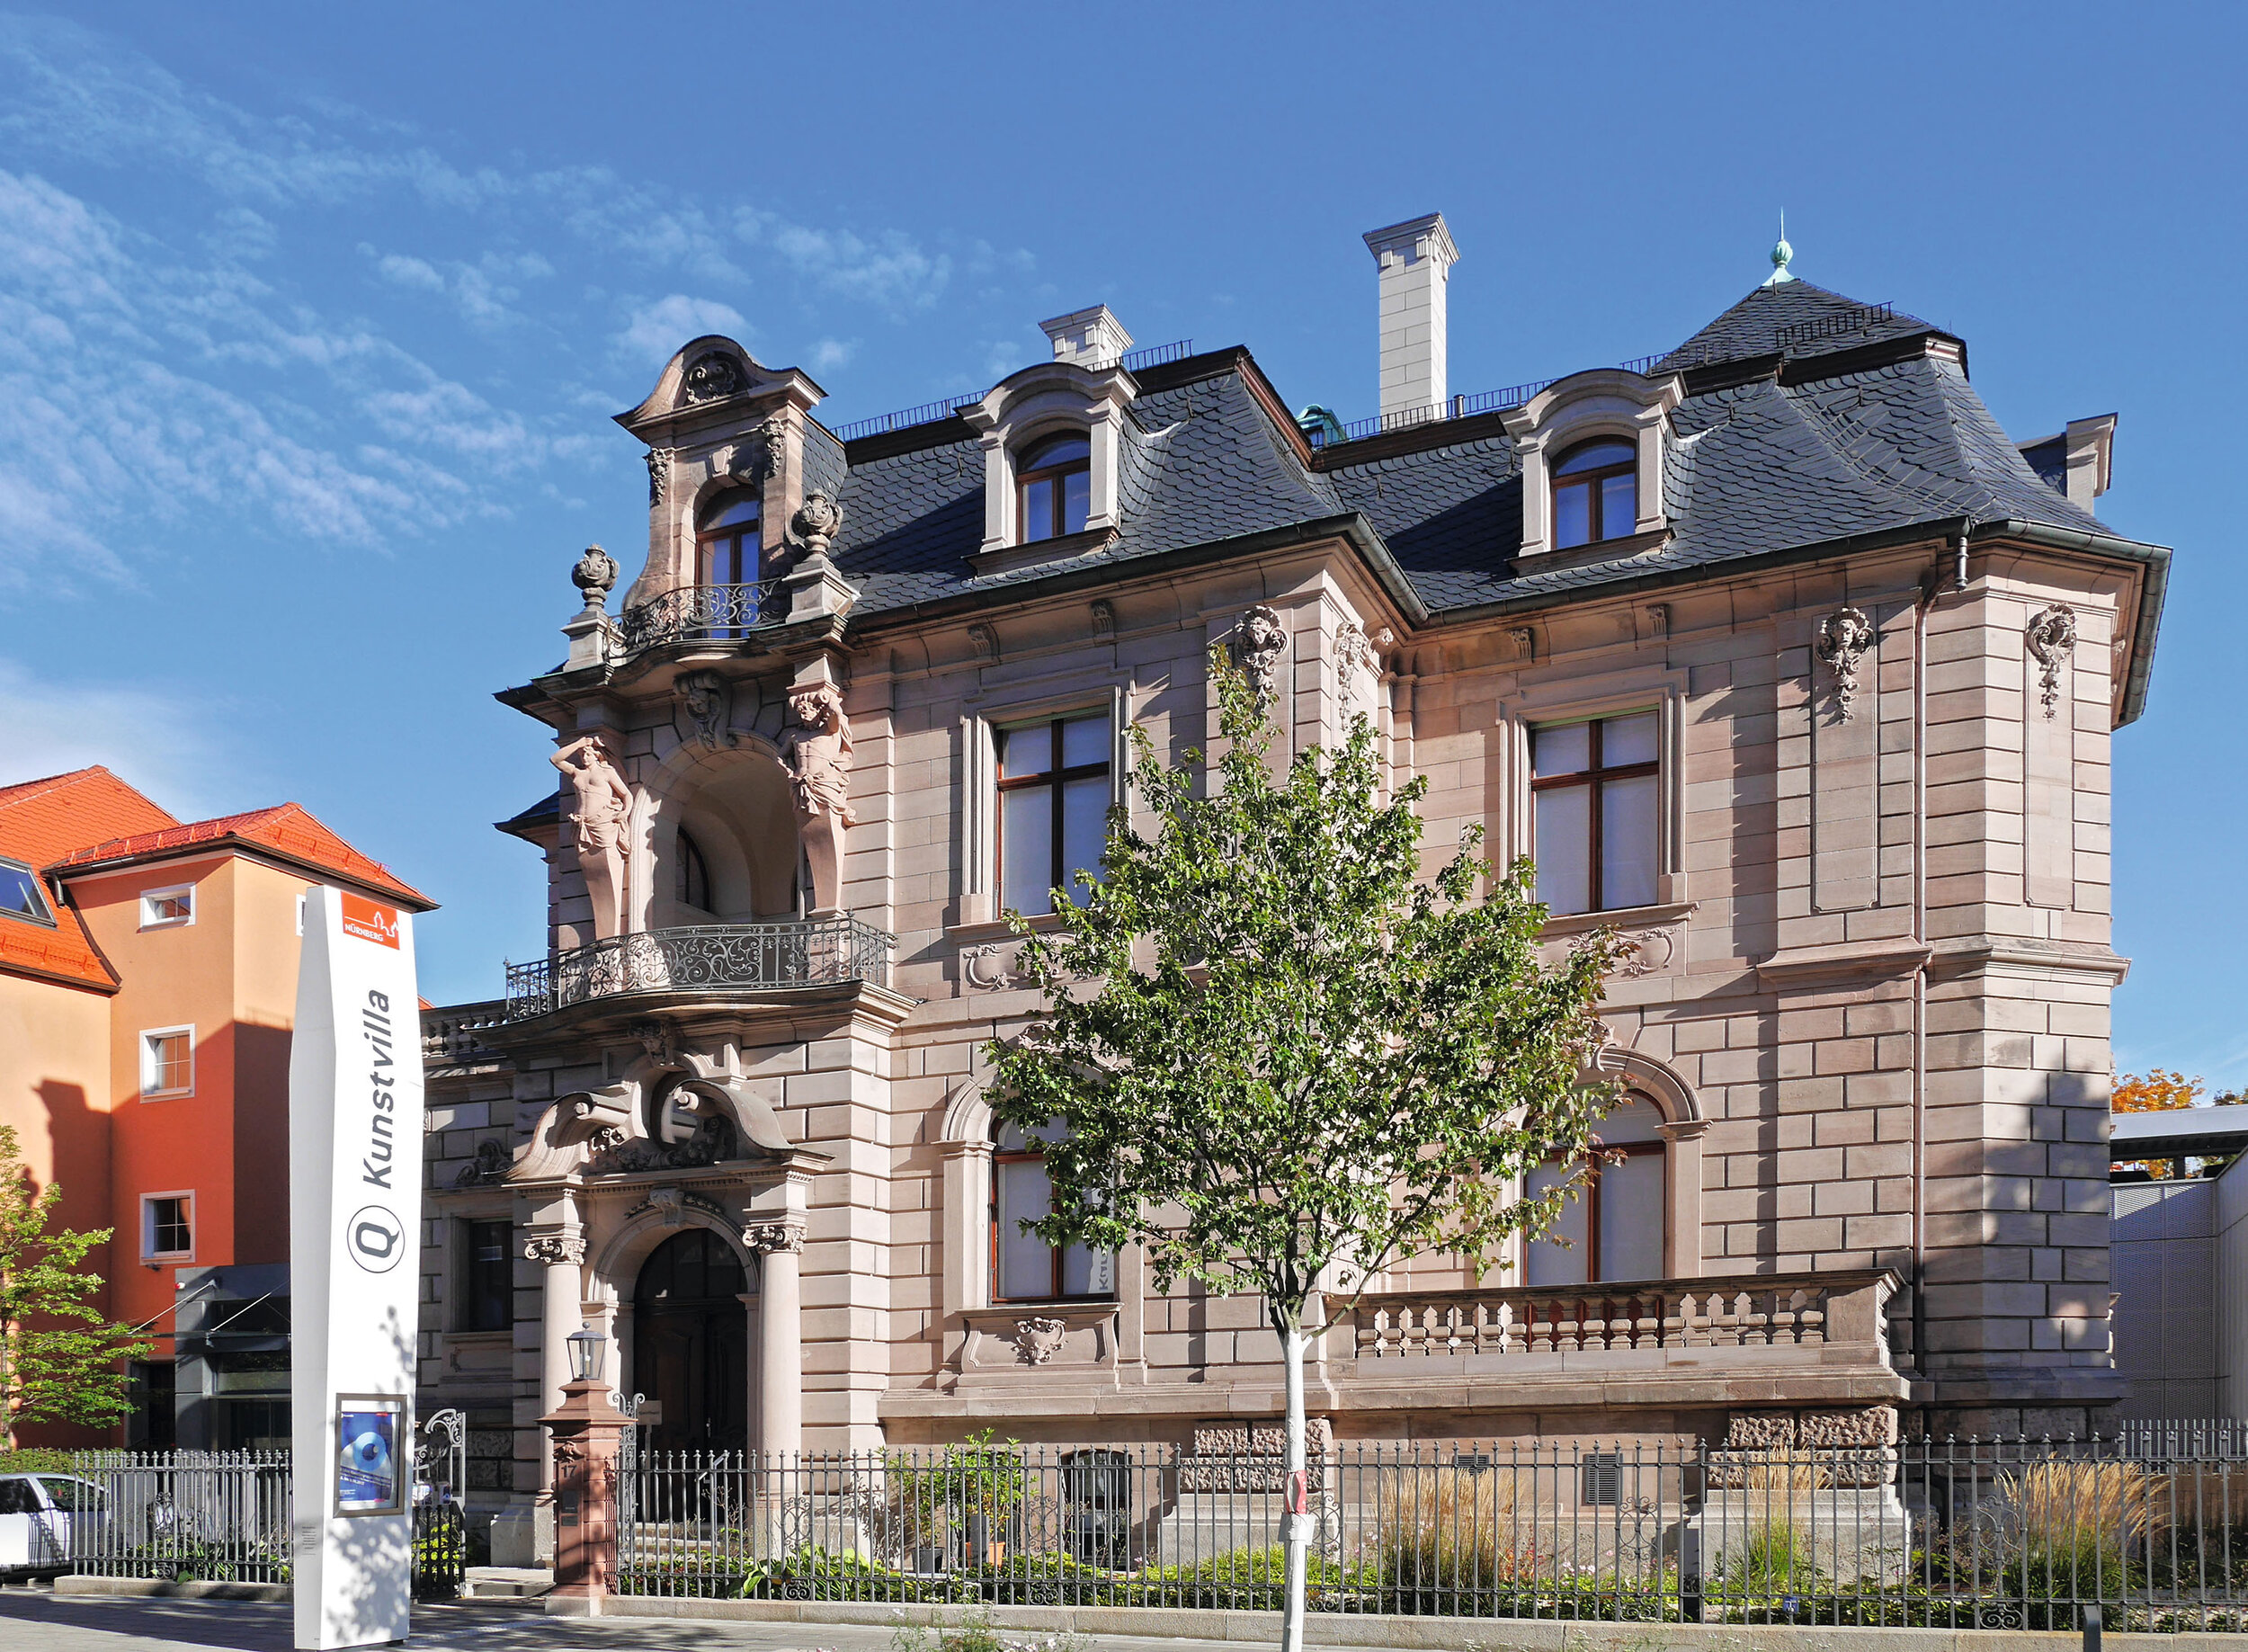 Die heutige städtische Kunstvilla in der Blumenstraße 17 wurde 1895 durch den jüdischen Hopfengroßhändler Emil Hopf errichtet.